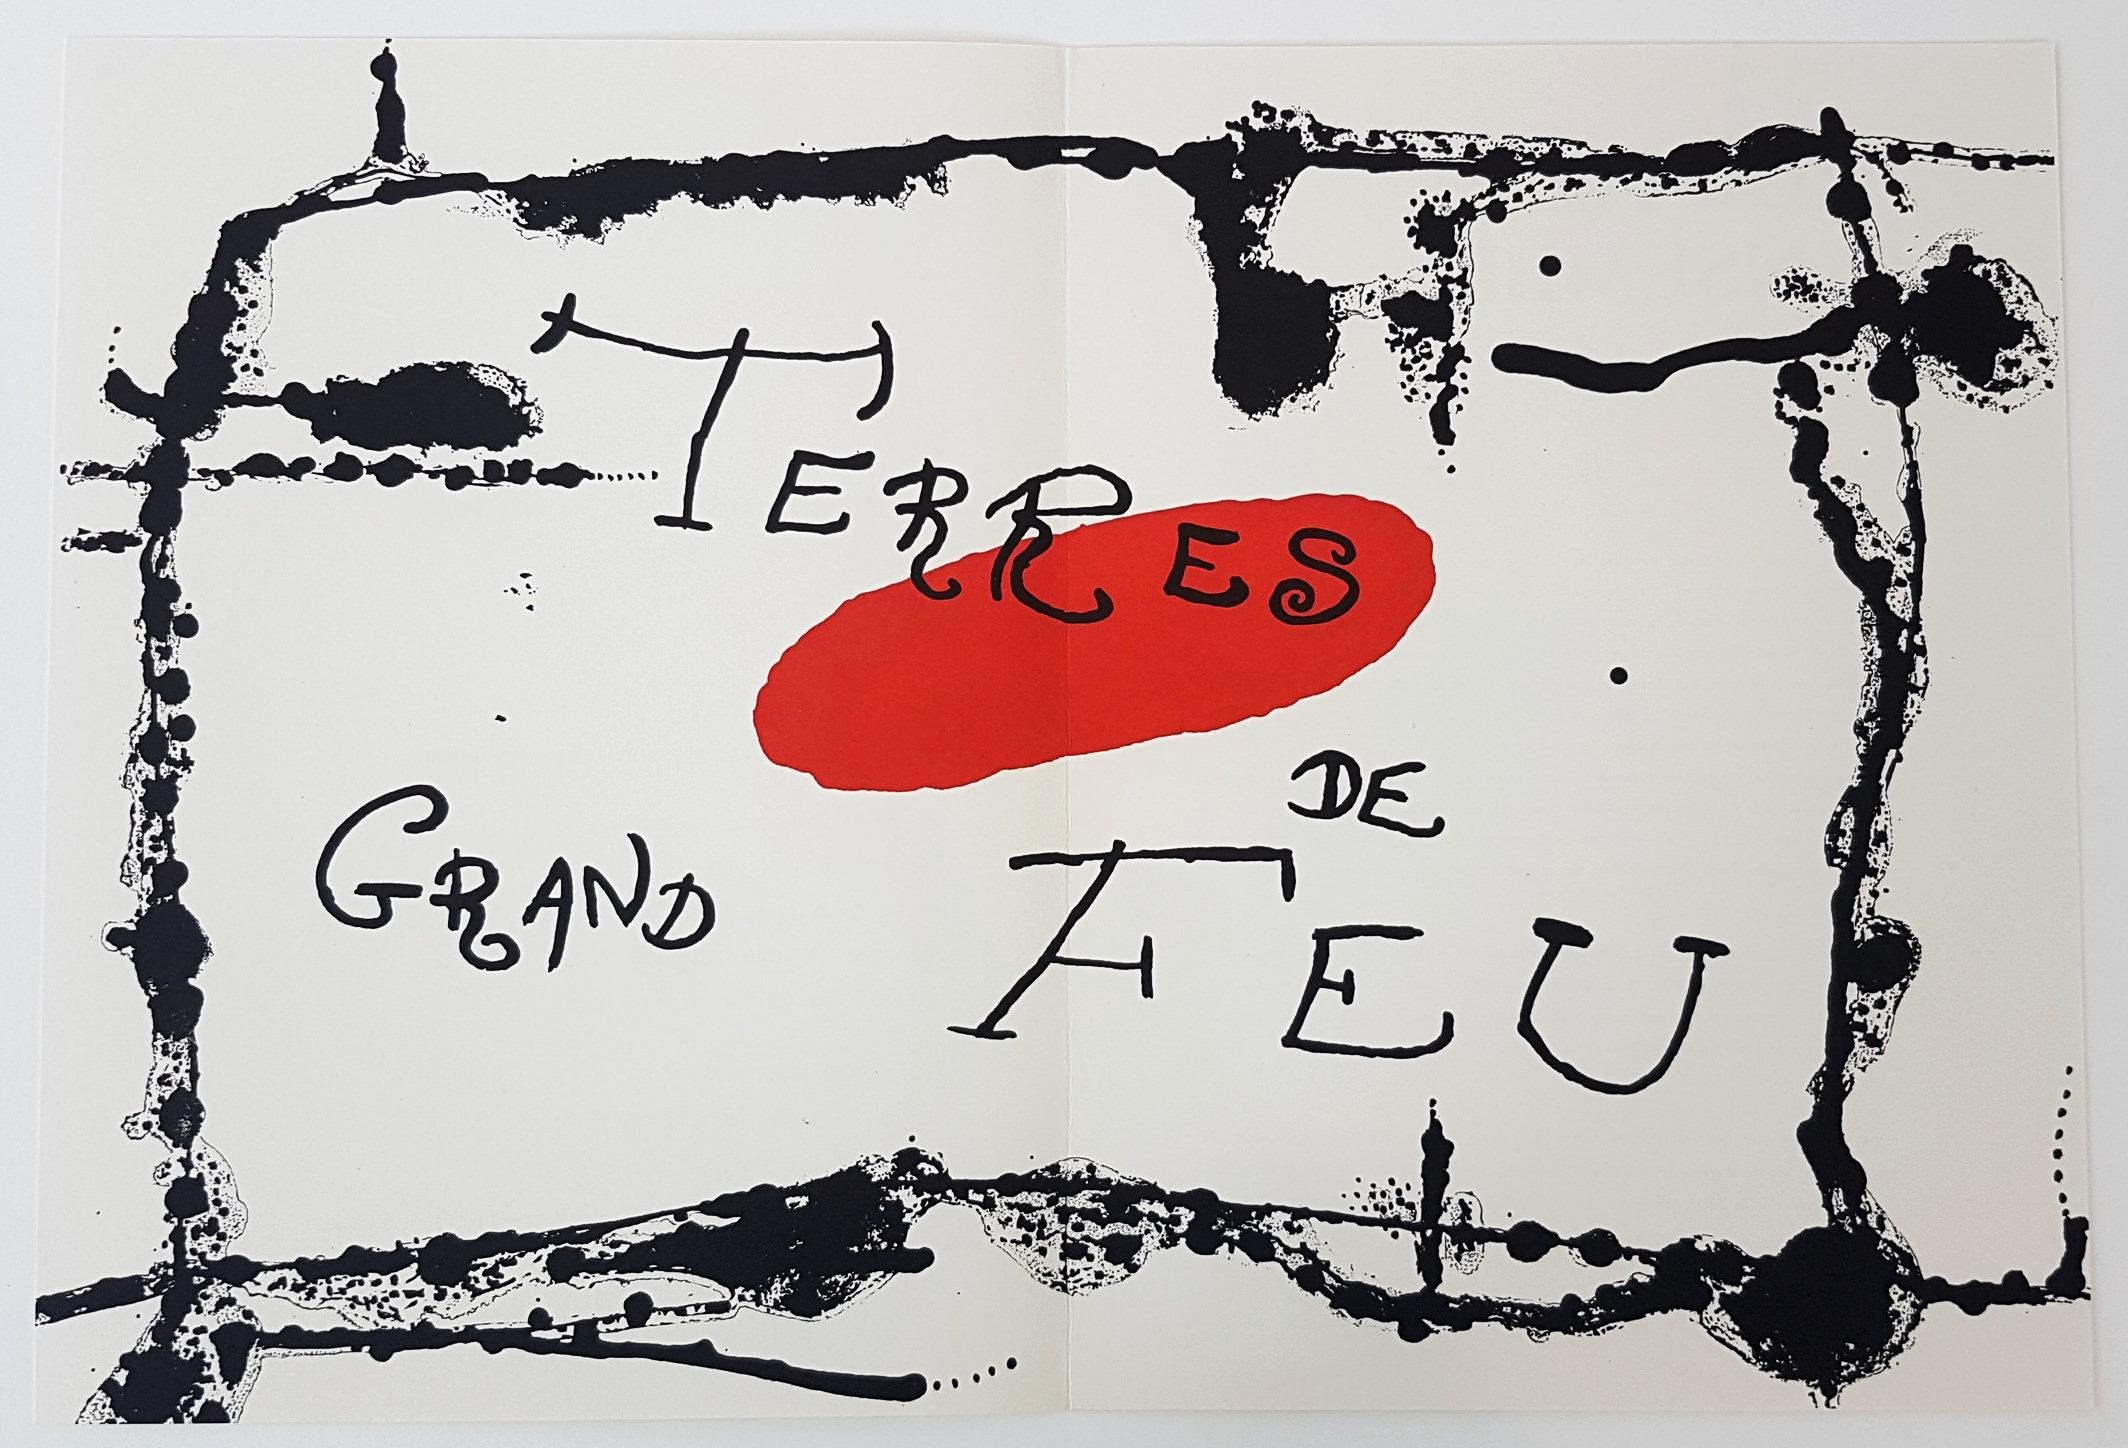 Joan Miró Figurative Print - Terres Grand de Feu (one plate from Artigas)